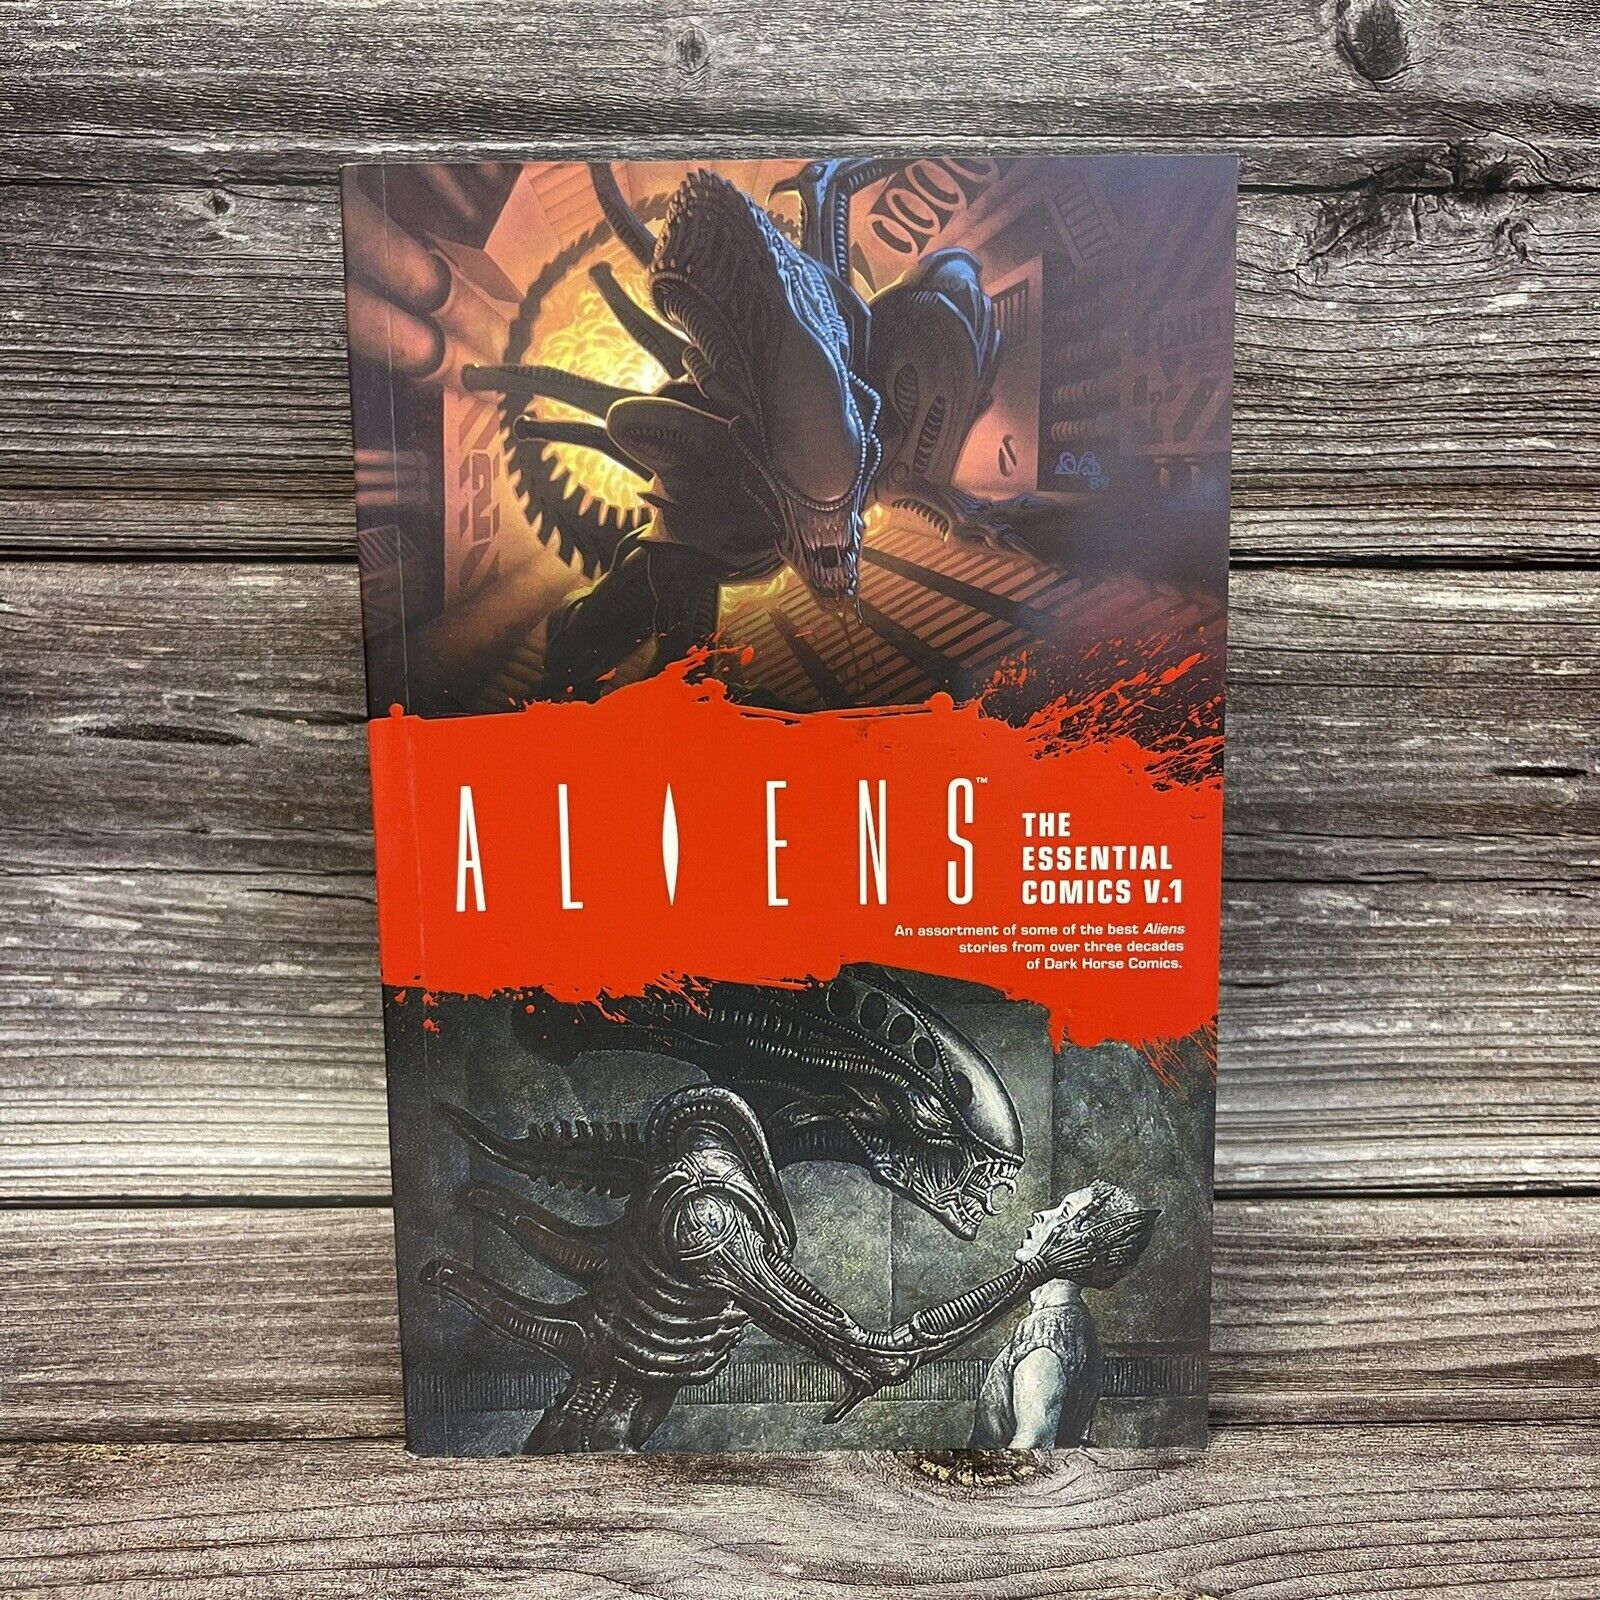 Aliens: The Essential Comics V1 Volume 1 Dark Horse